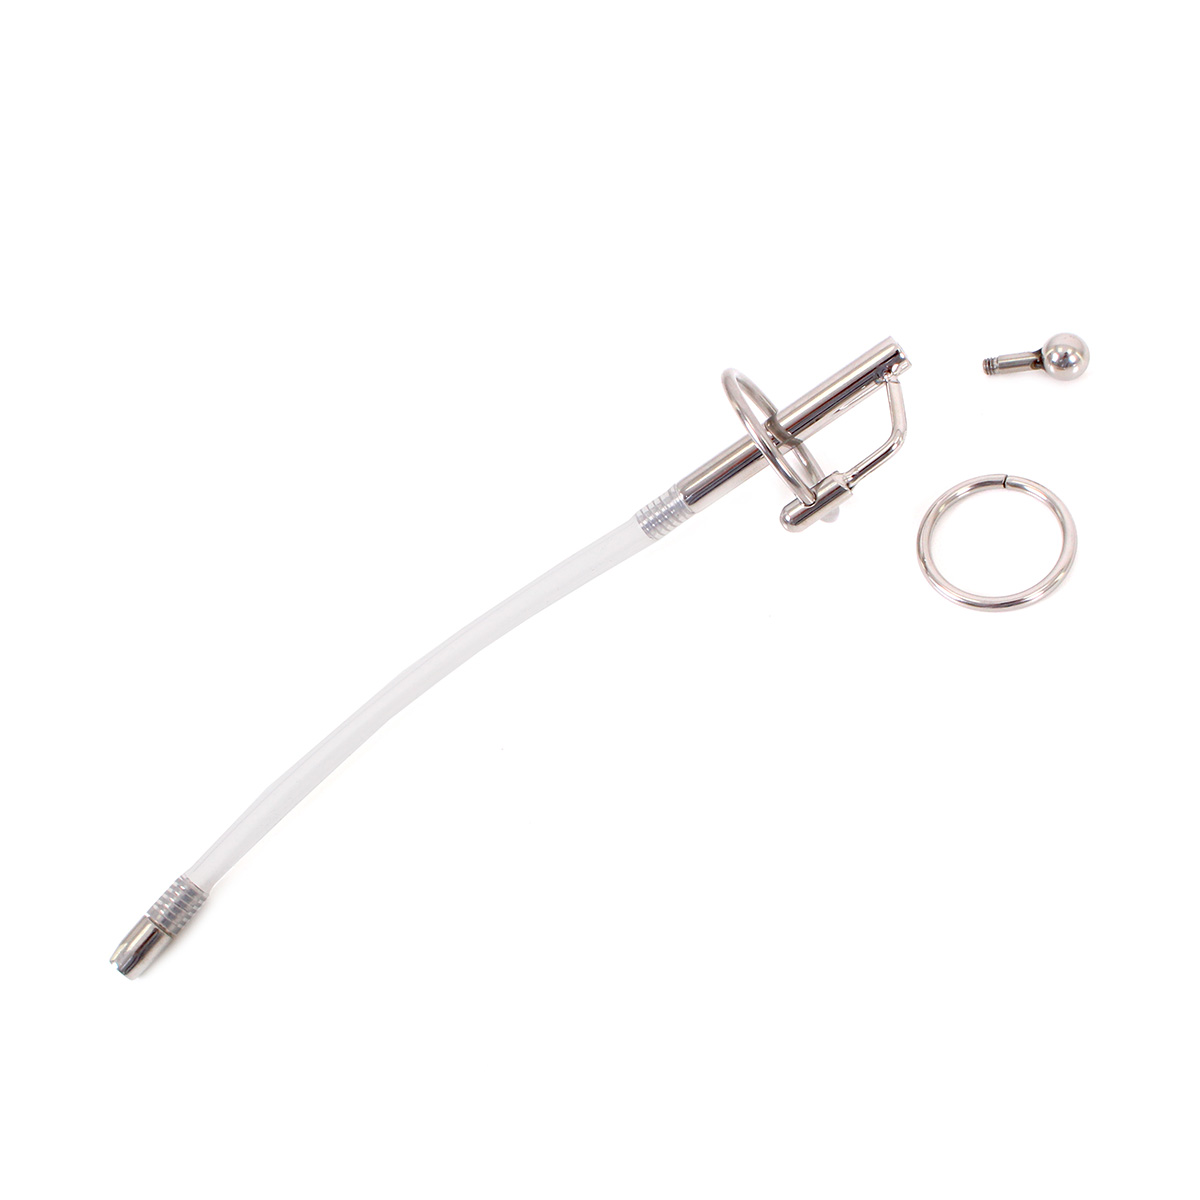 Urethral-Catheter-Large-Plug-OPR-3330036-2